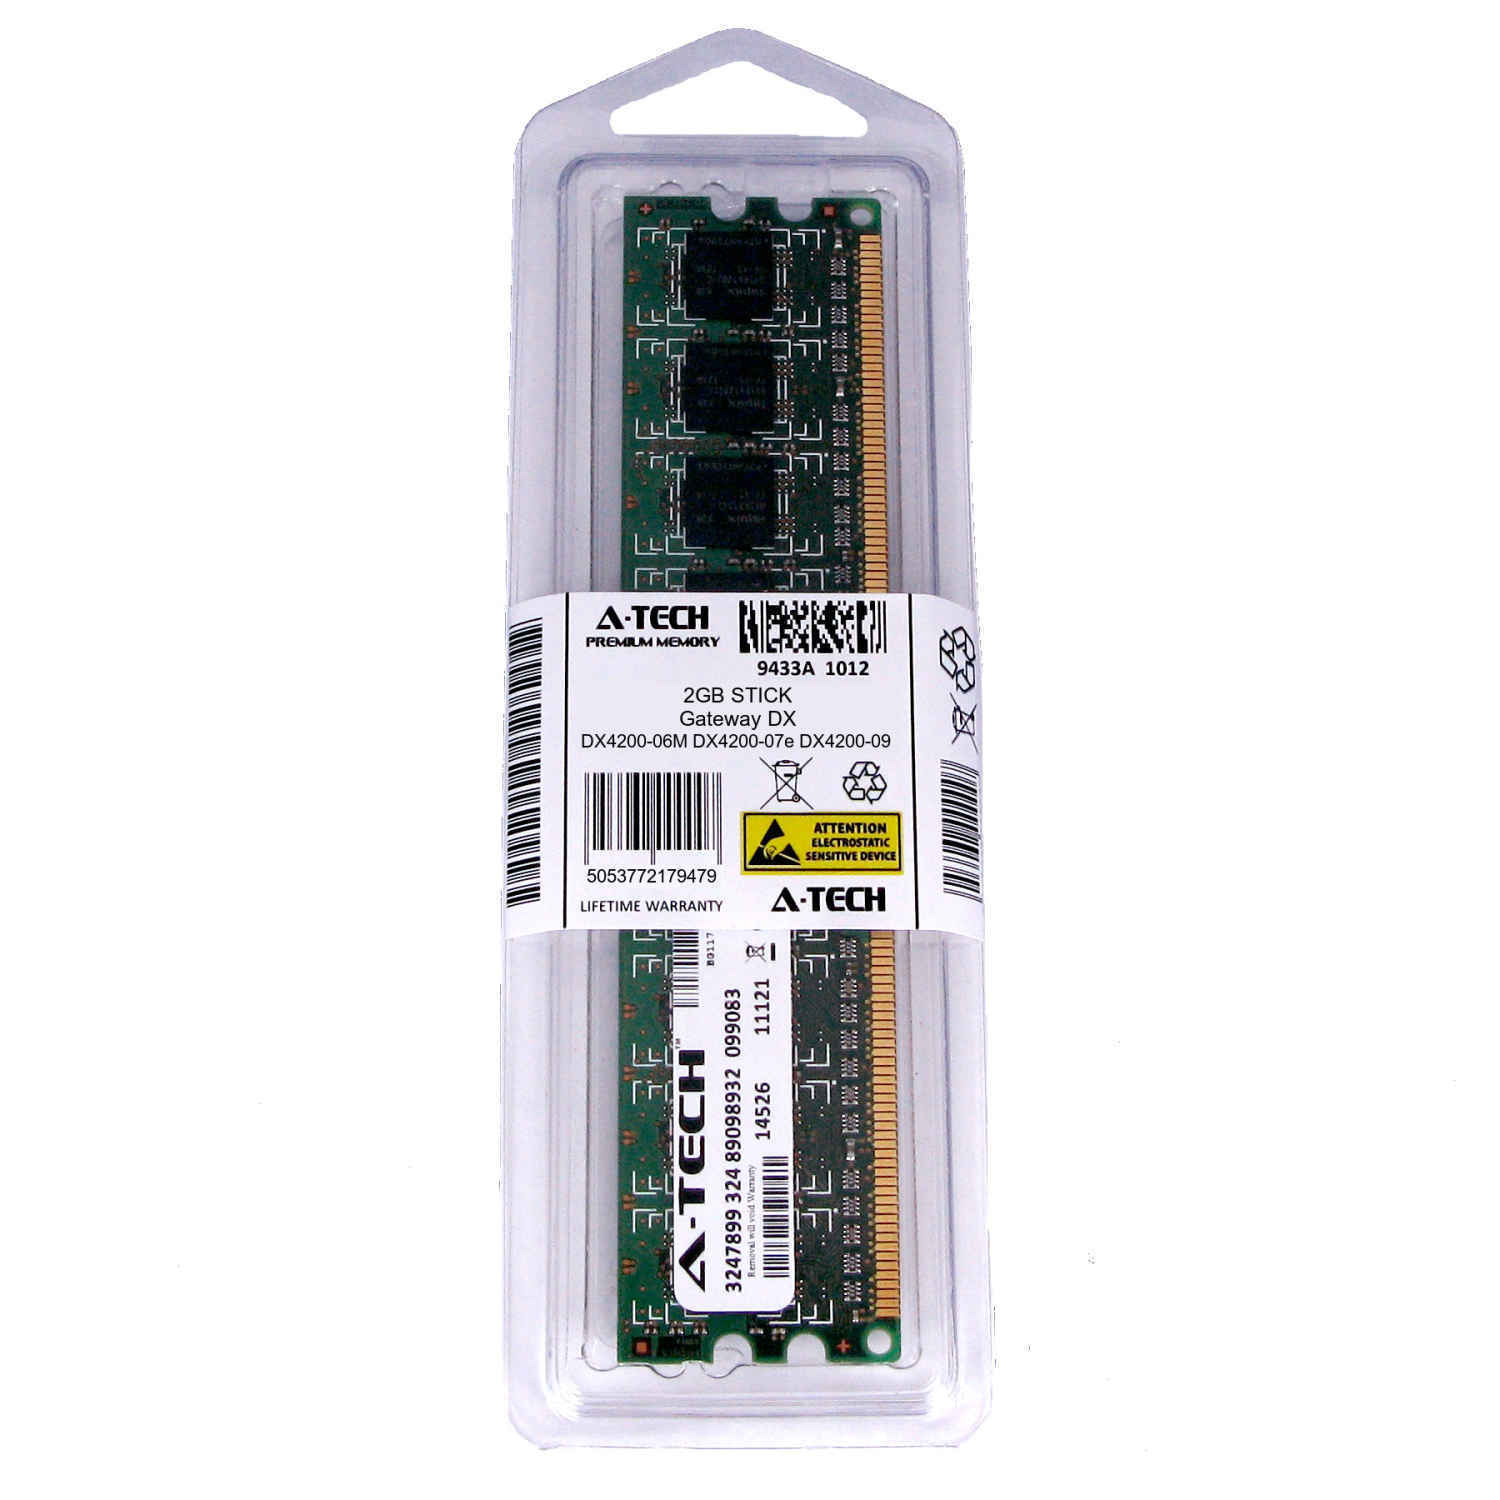 2GB DIMM Gateway DX4200-06M DX4200-07e DX4200-09 DX4200-11 DX4300 Ram Memory